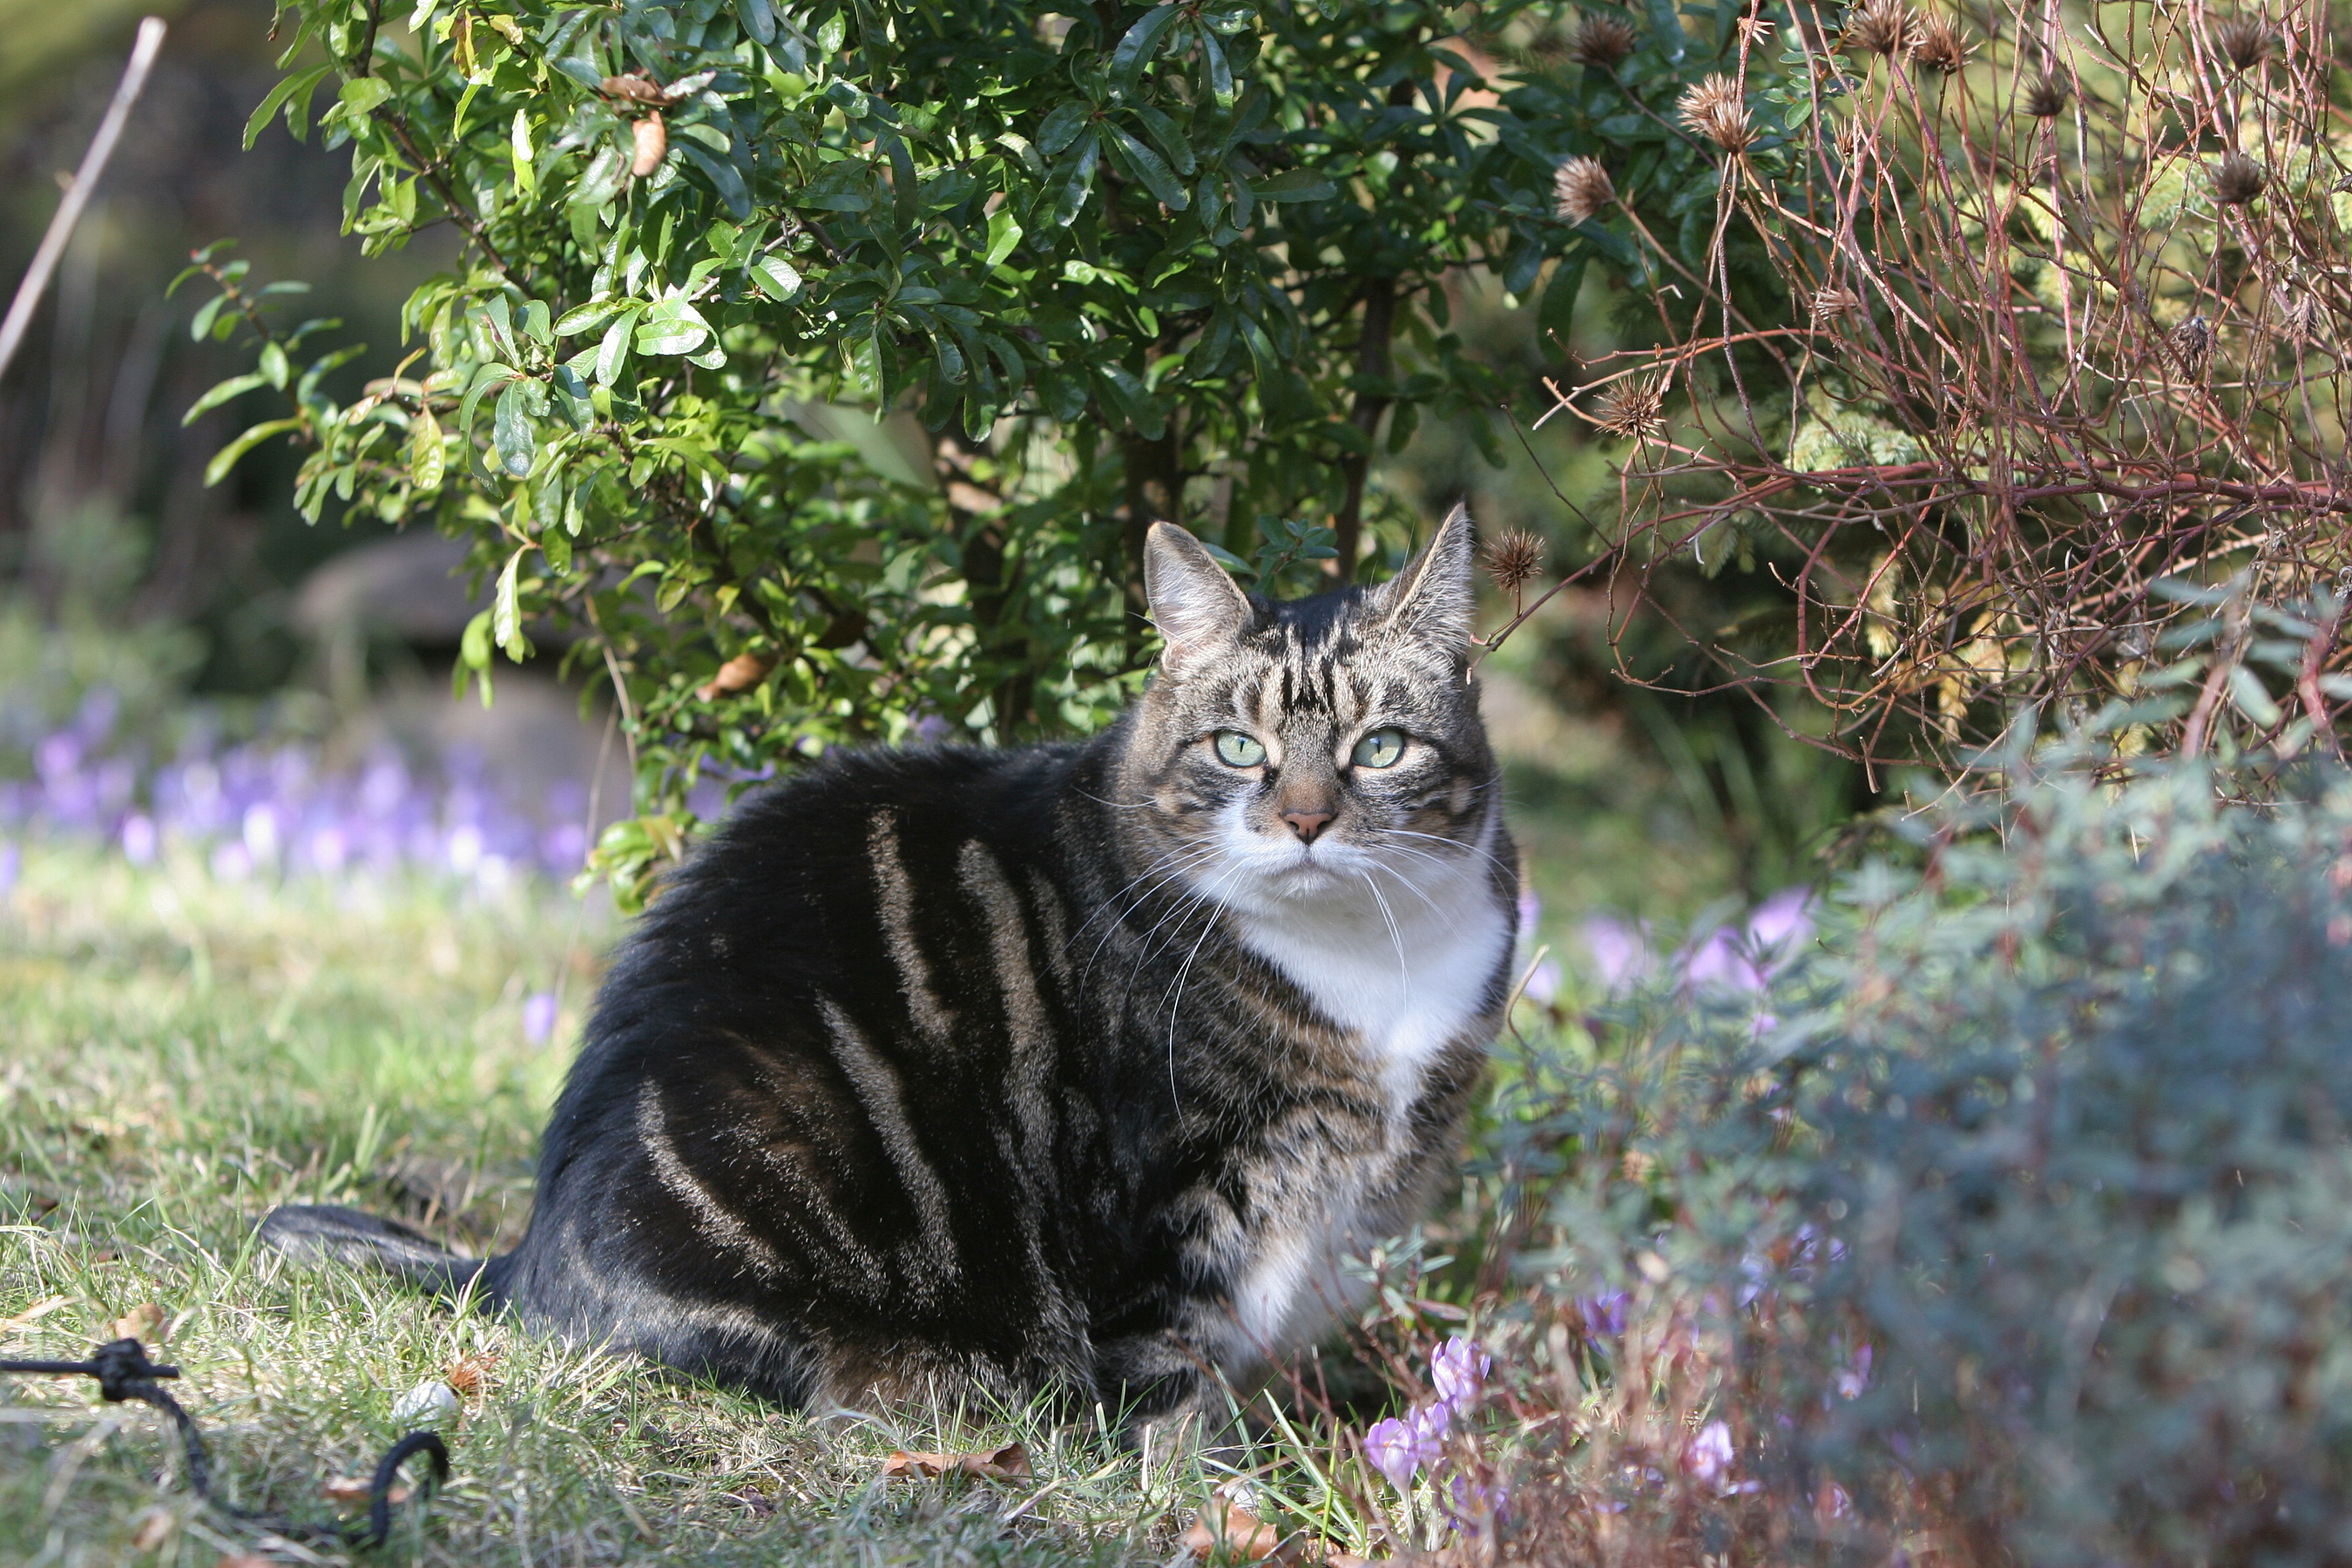 A cat in the garden (Blue Cross/PA)